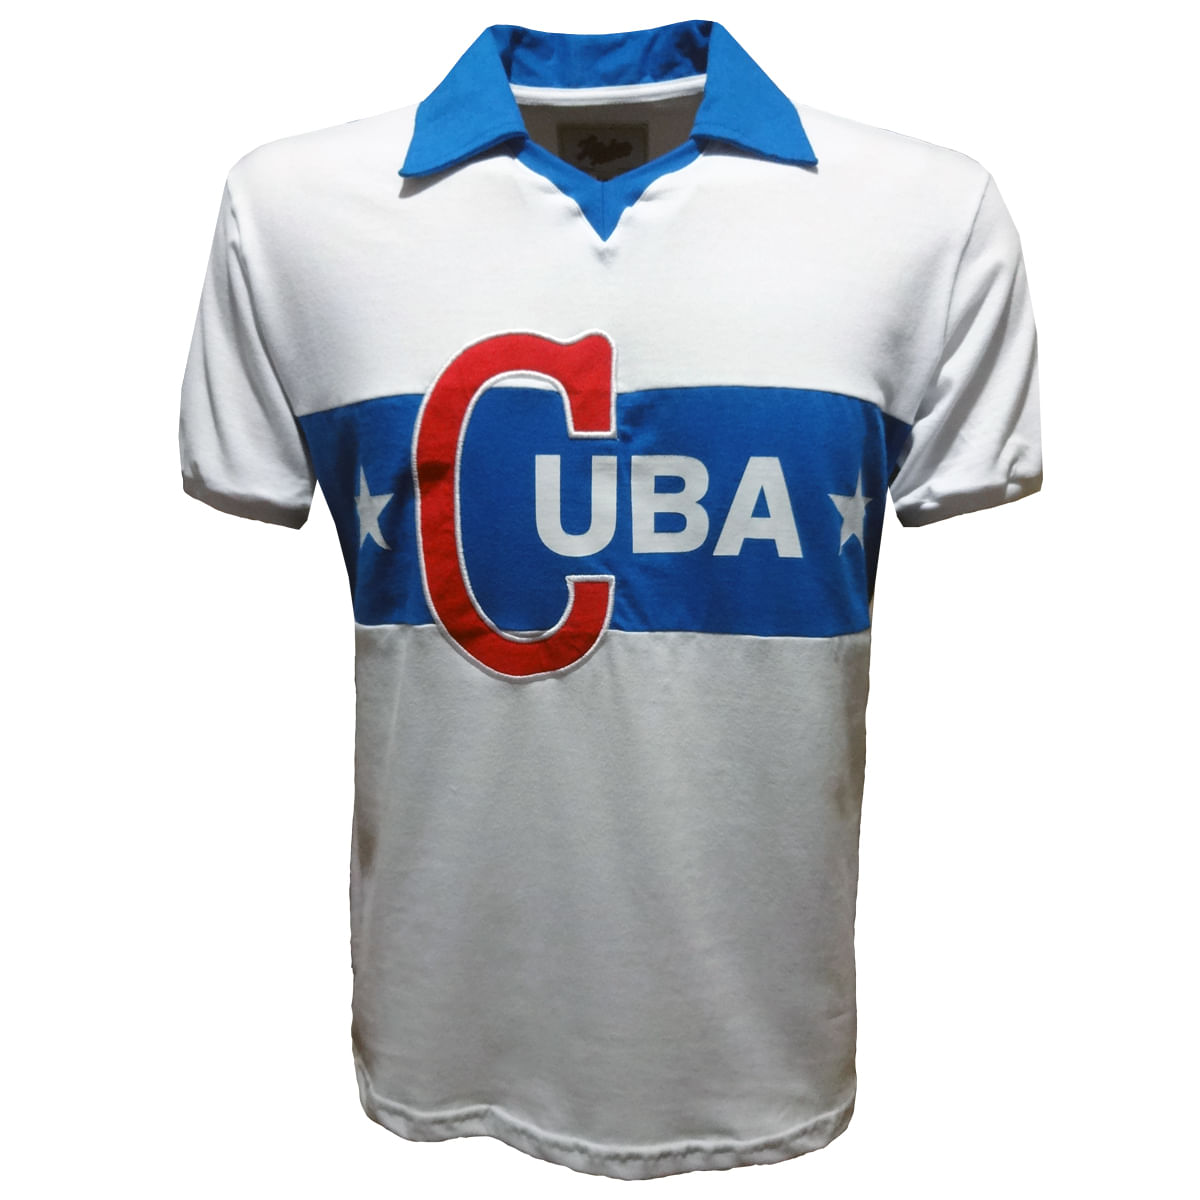 CUBA 1962